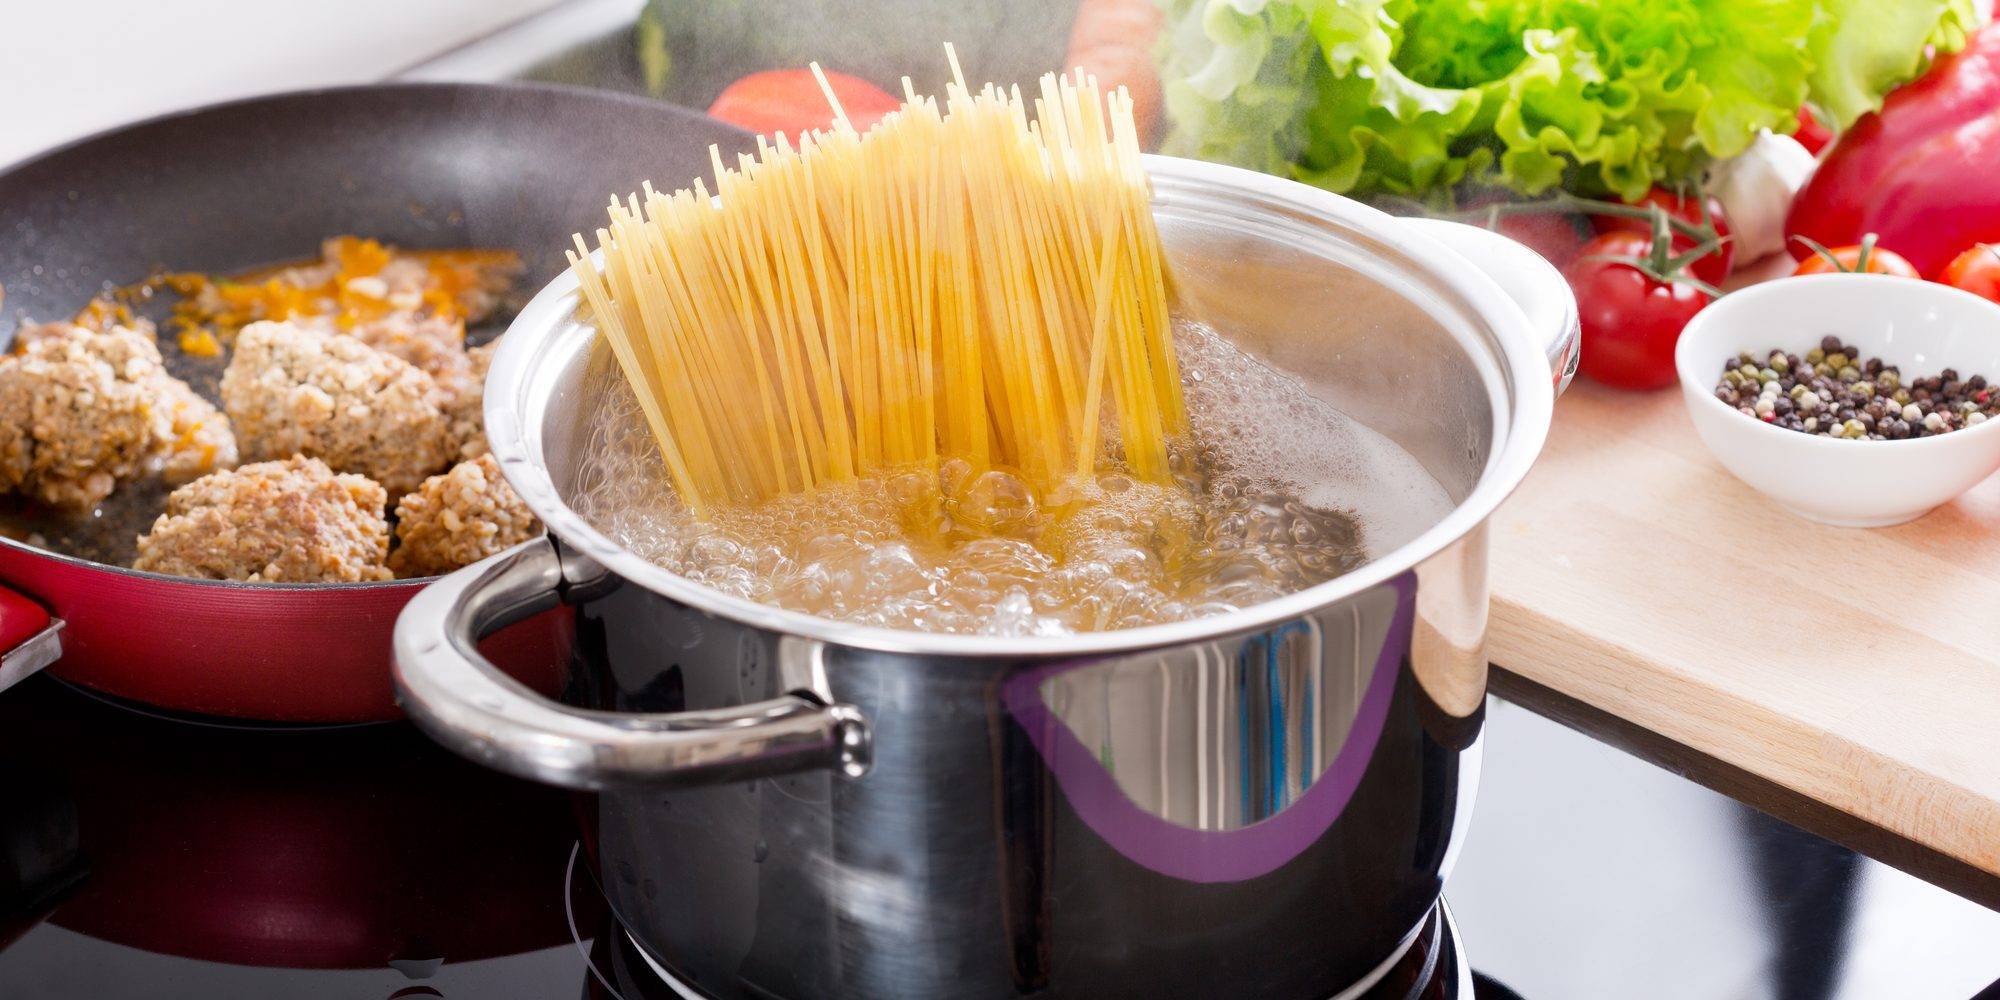 Как варить макароны в кастрюле по пошаговому рецепту